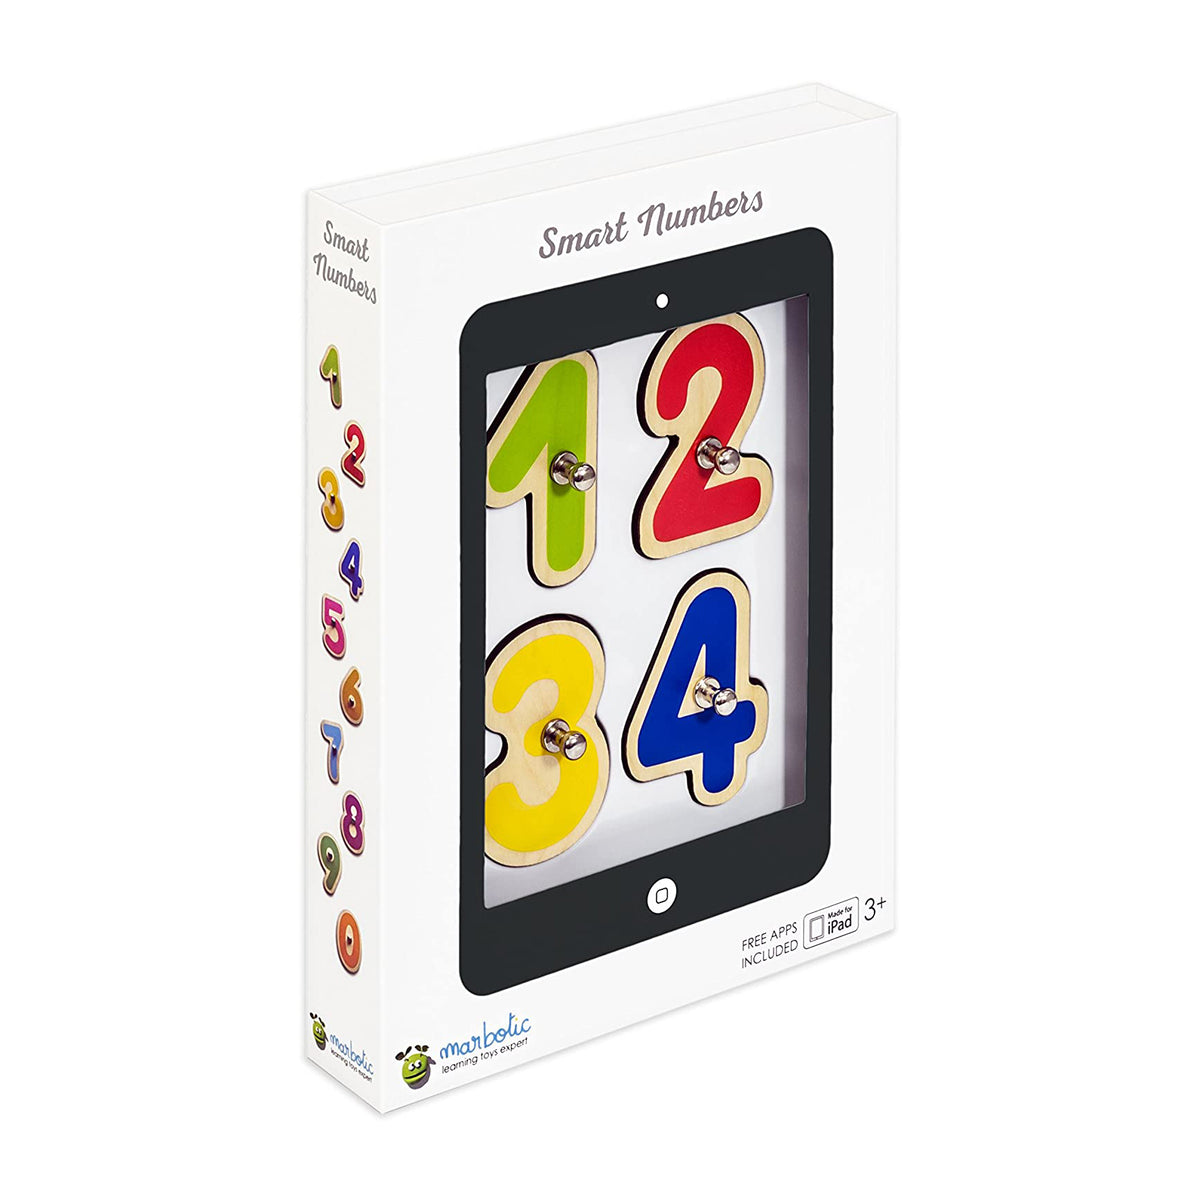 Marbotic números inteligentes, juego para tablets, niños de 3+ - Multimax